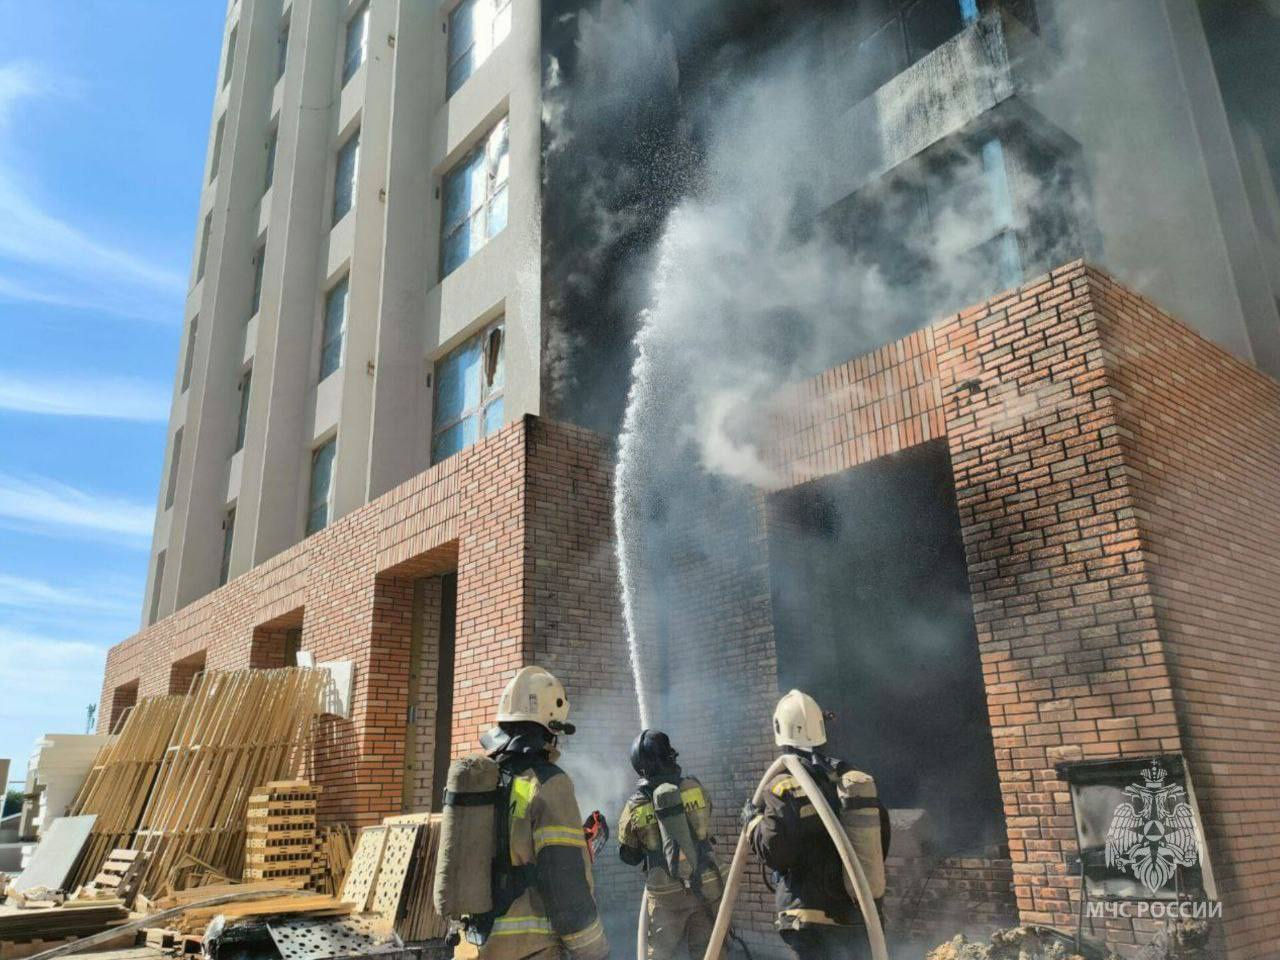 Дым выше девяти этажей: в Барнауле сняли на видео пожар в строящемся доме